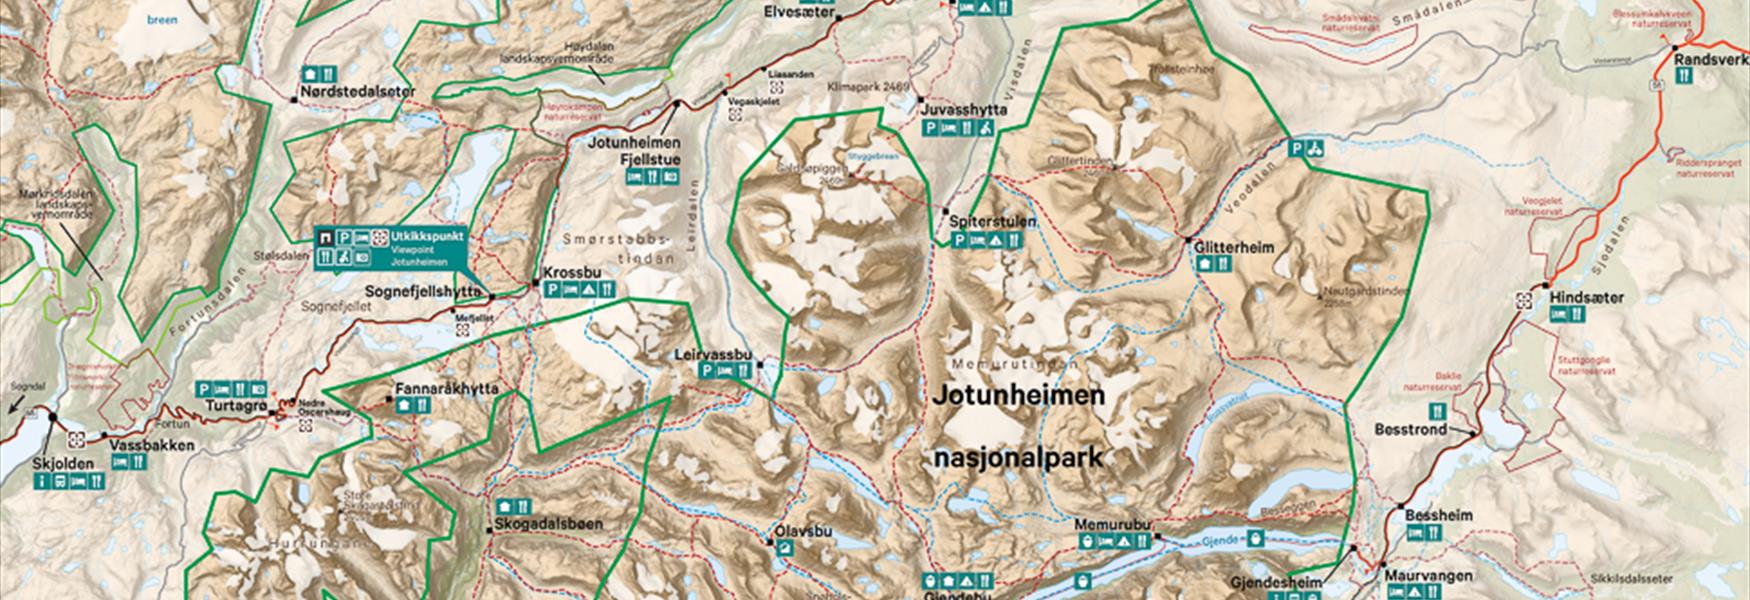 Jotunheimen nasjonalpark kart artikkelside - illustrasjon